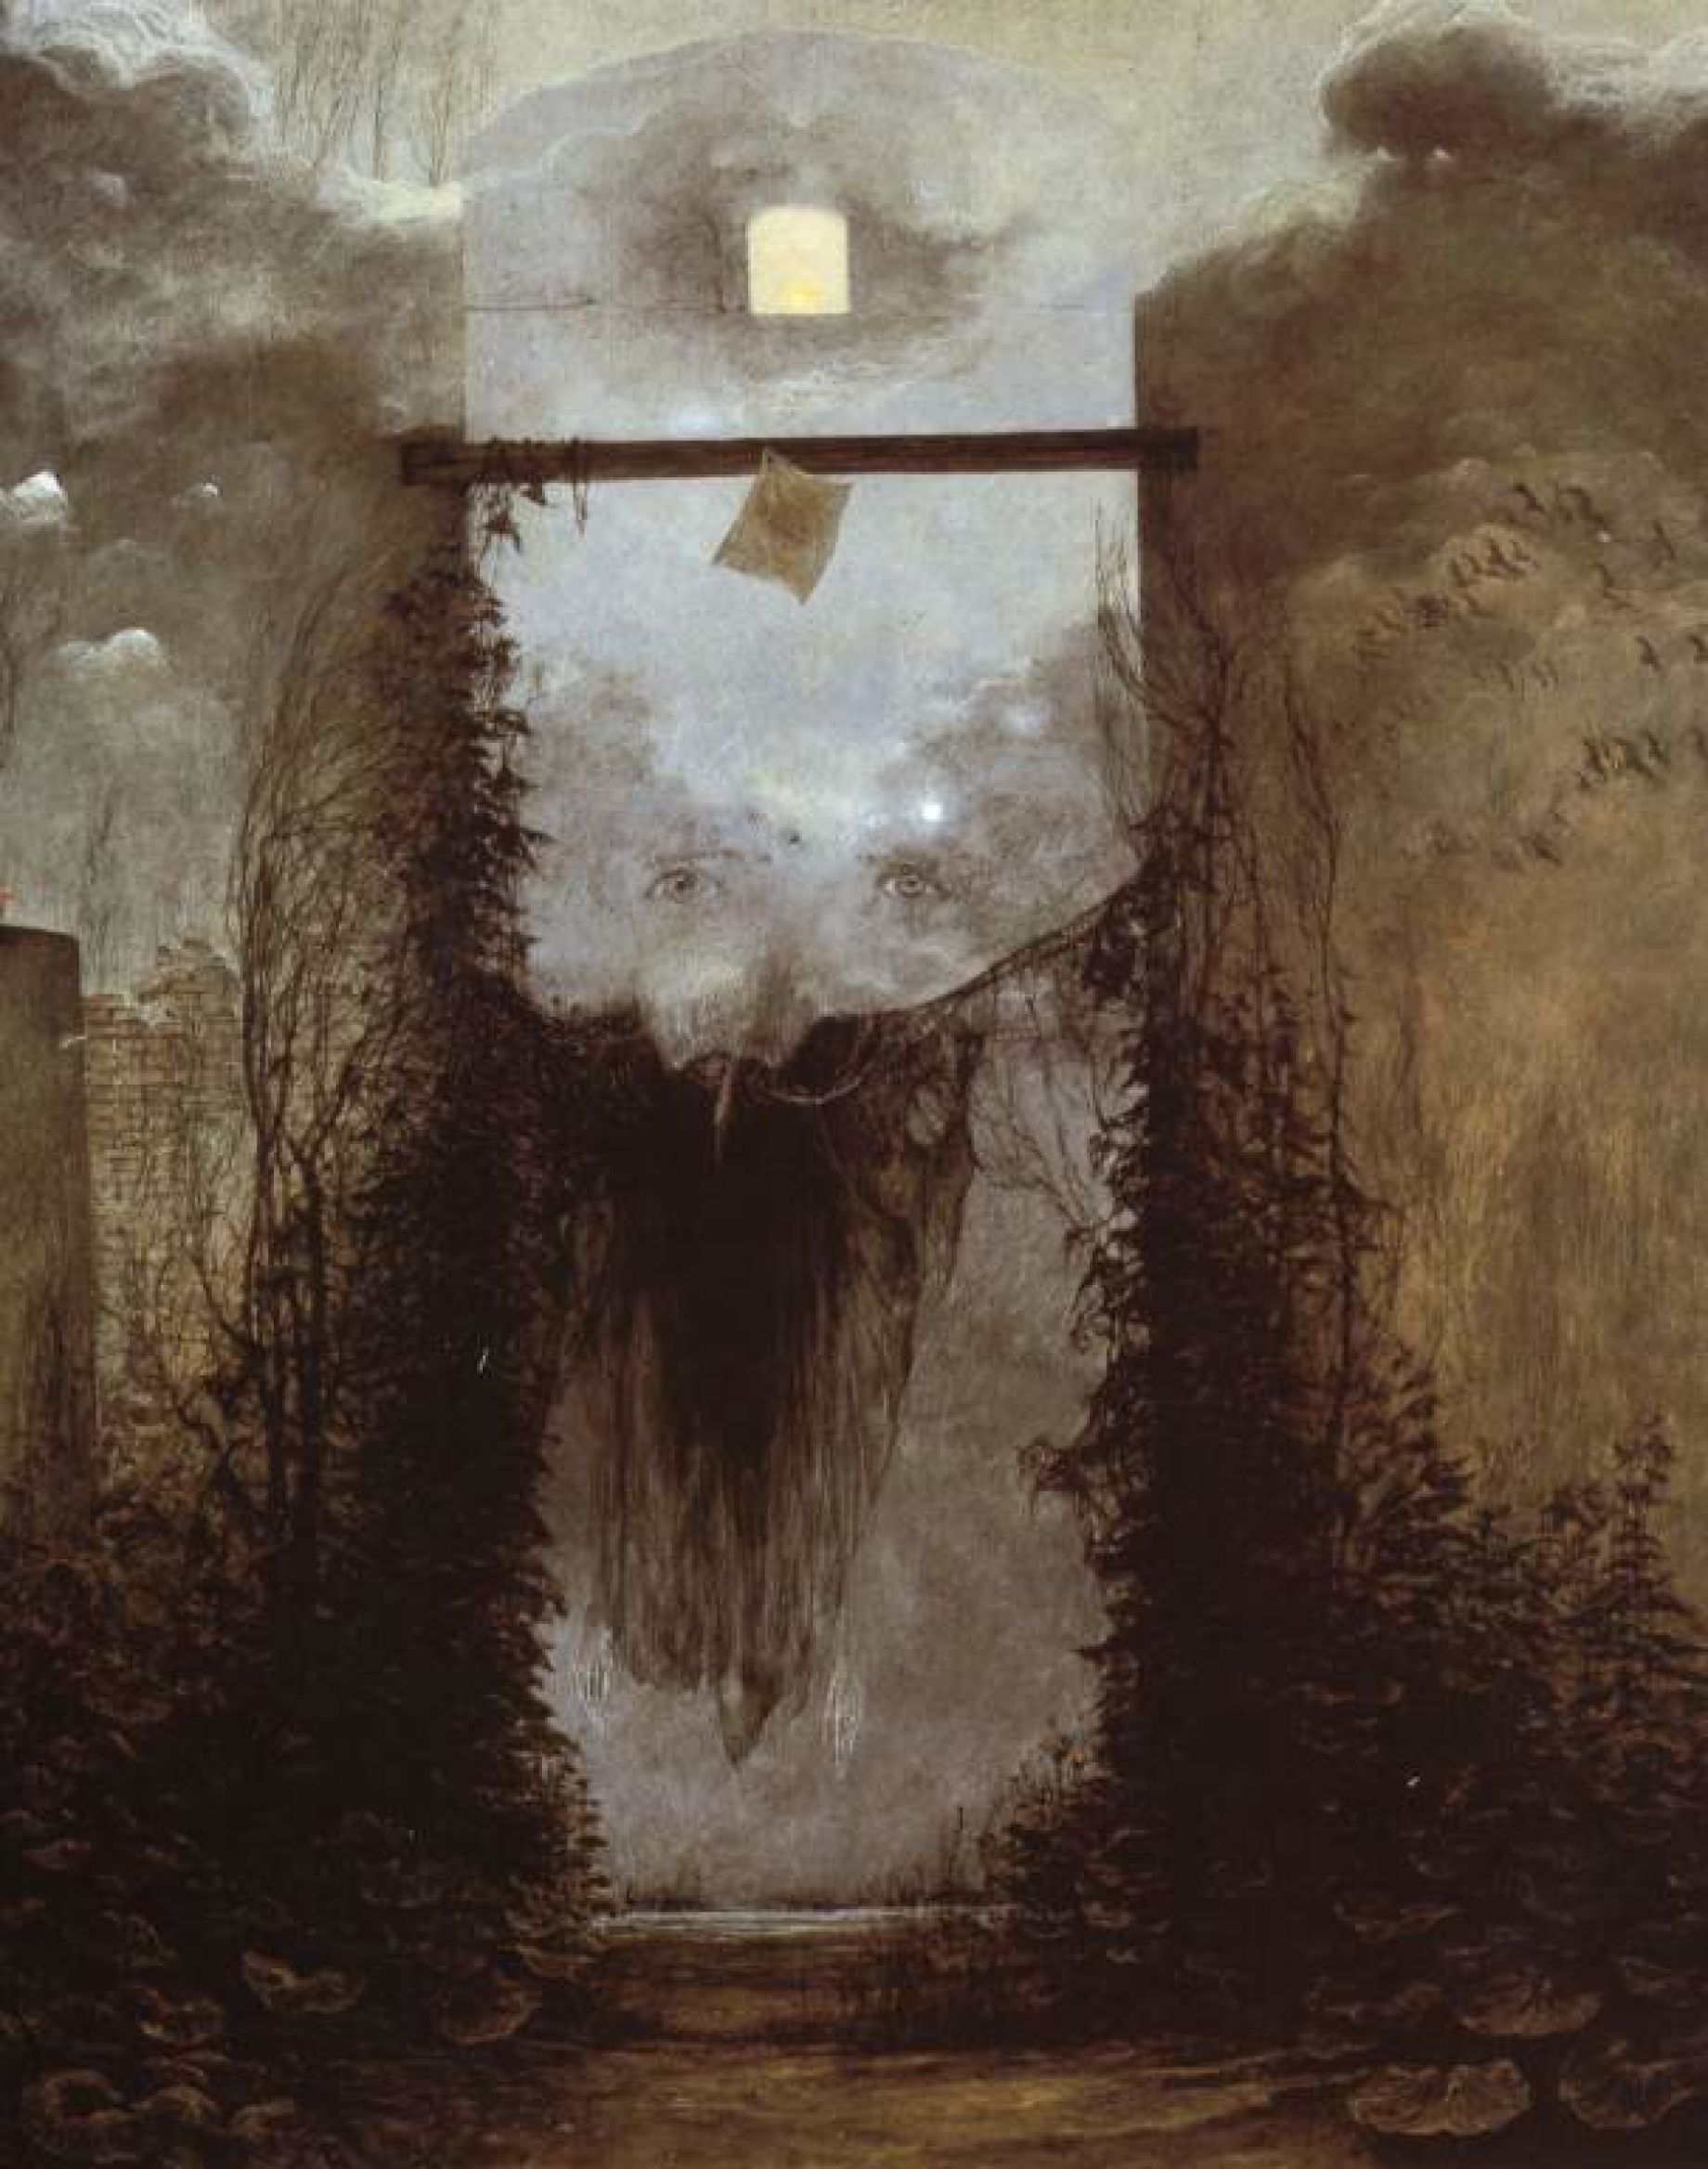 Zdzislaw Beksinski: Dystopian Surrealism in Games